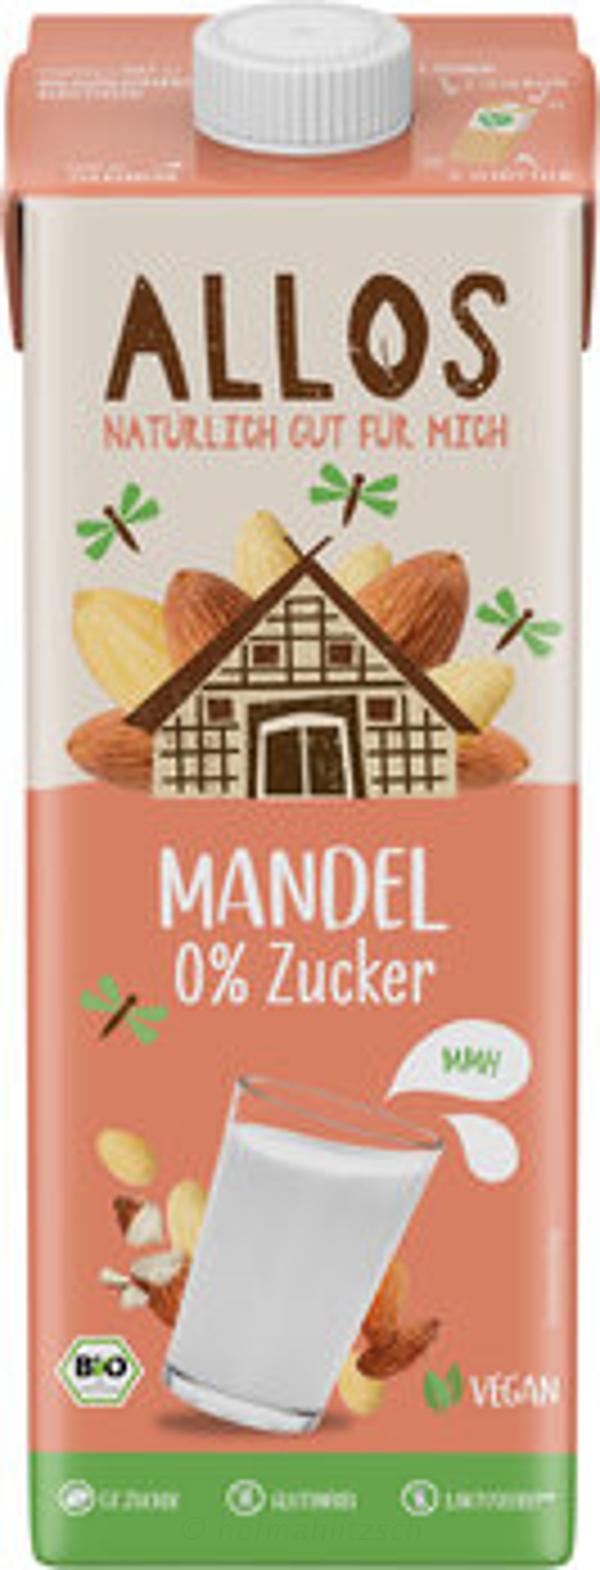 Produktfoto zu Mandel-Drink Naturell